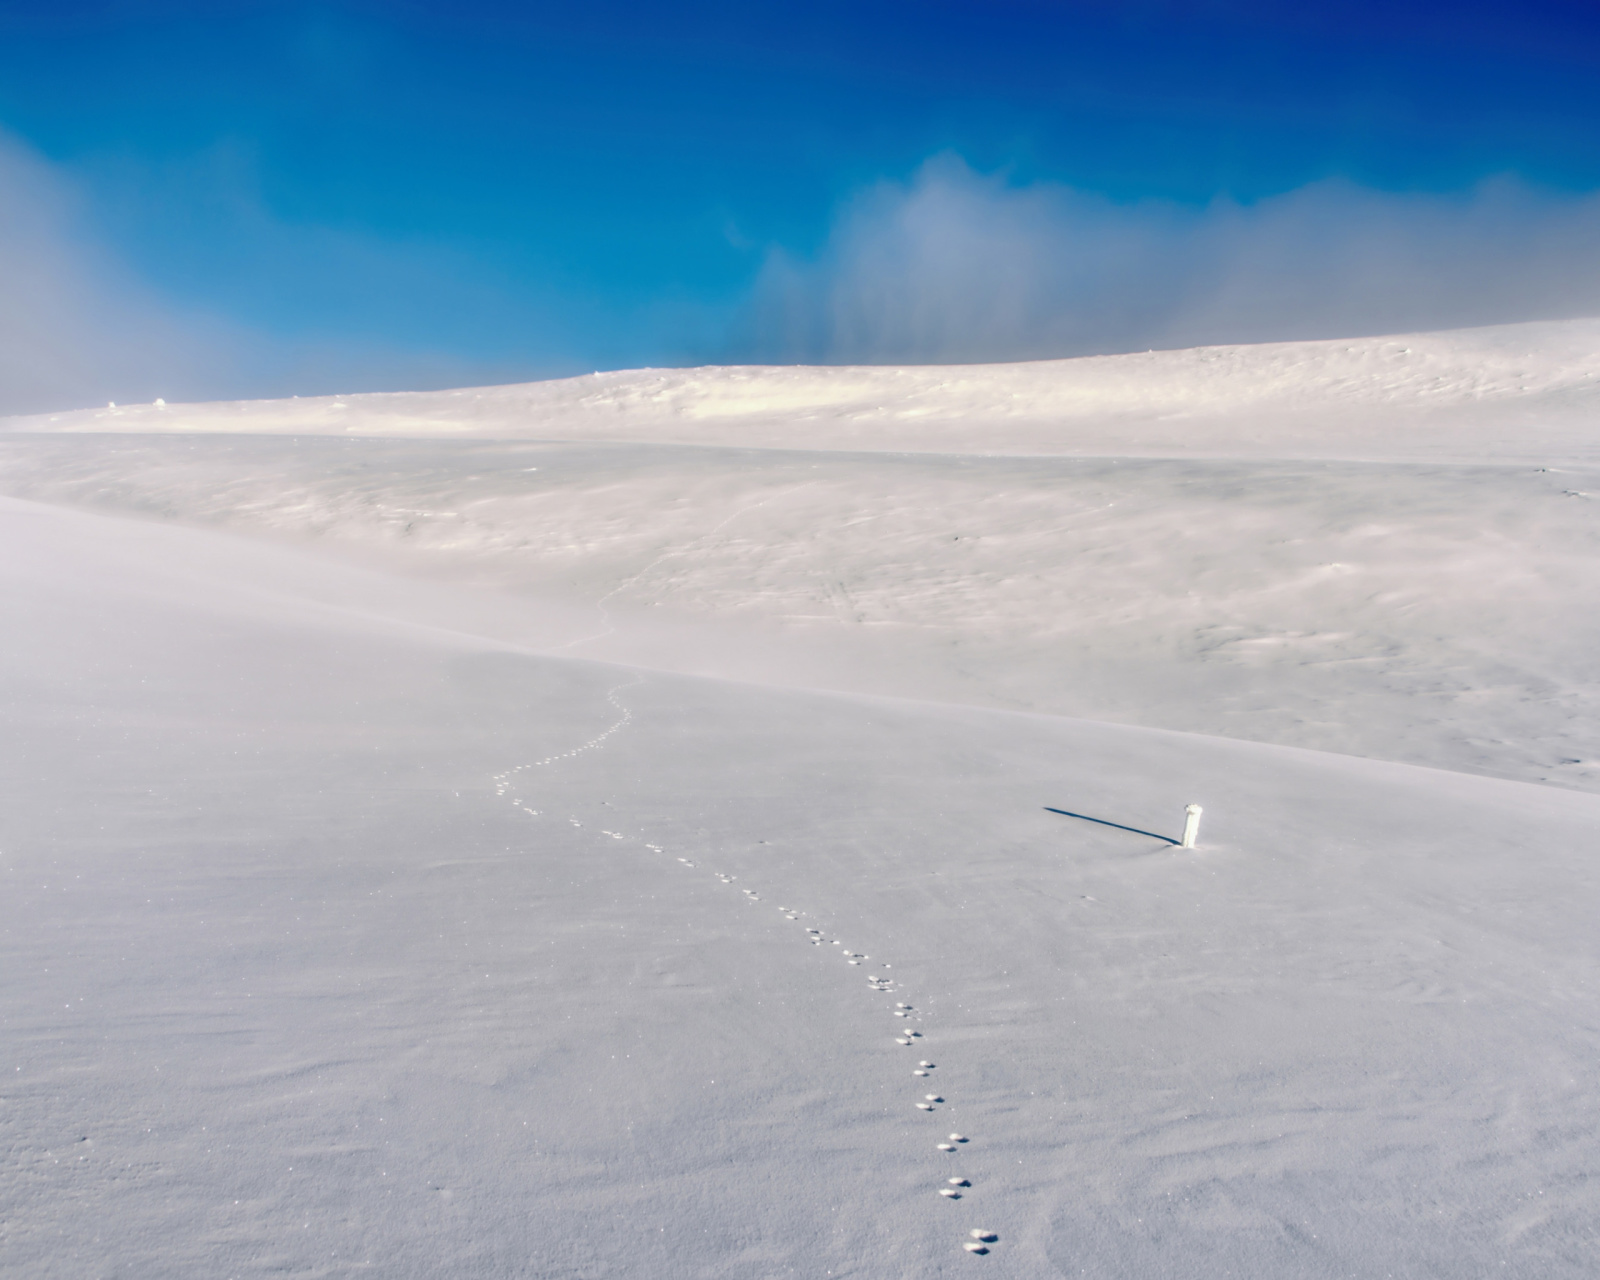 Footprints on snow field wallpaper 1600x1280